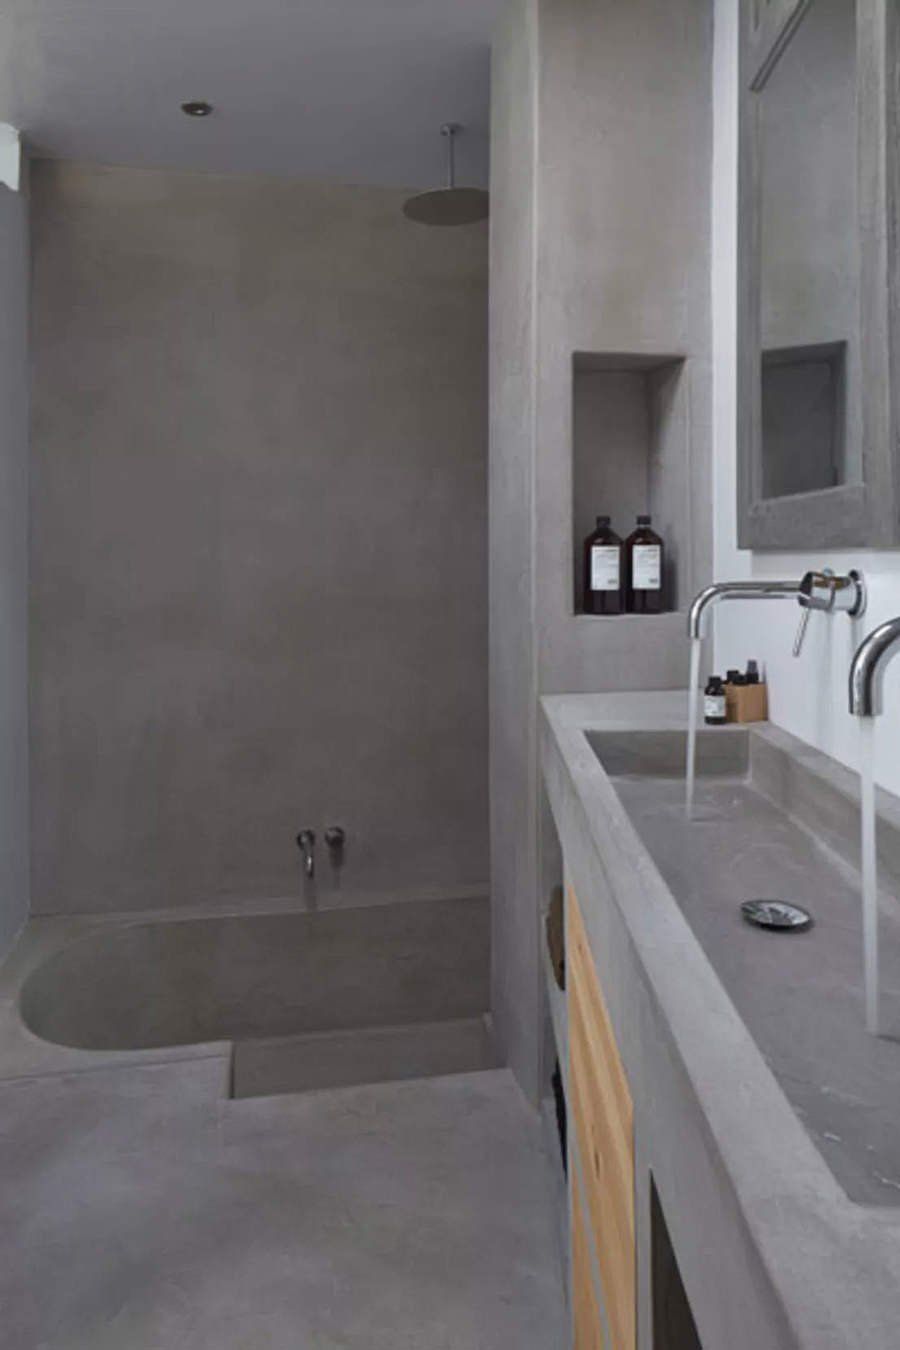 Stupendo bagno in muratura dalle superfici omogenee, con vasca, lavandino, mobili e nicchie create in cemento. Una perfetta qualificazione estetica e strutturale della stanza.